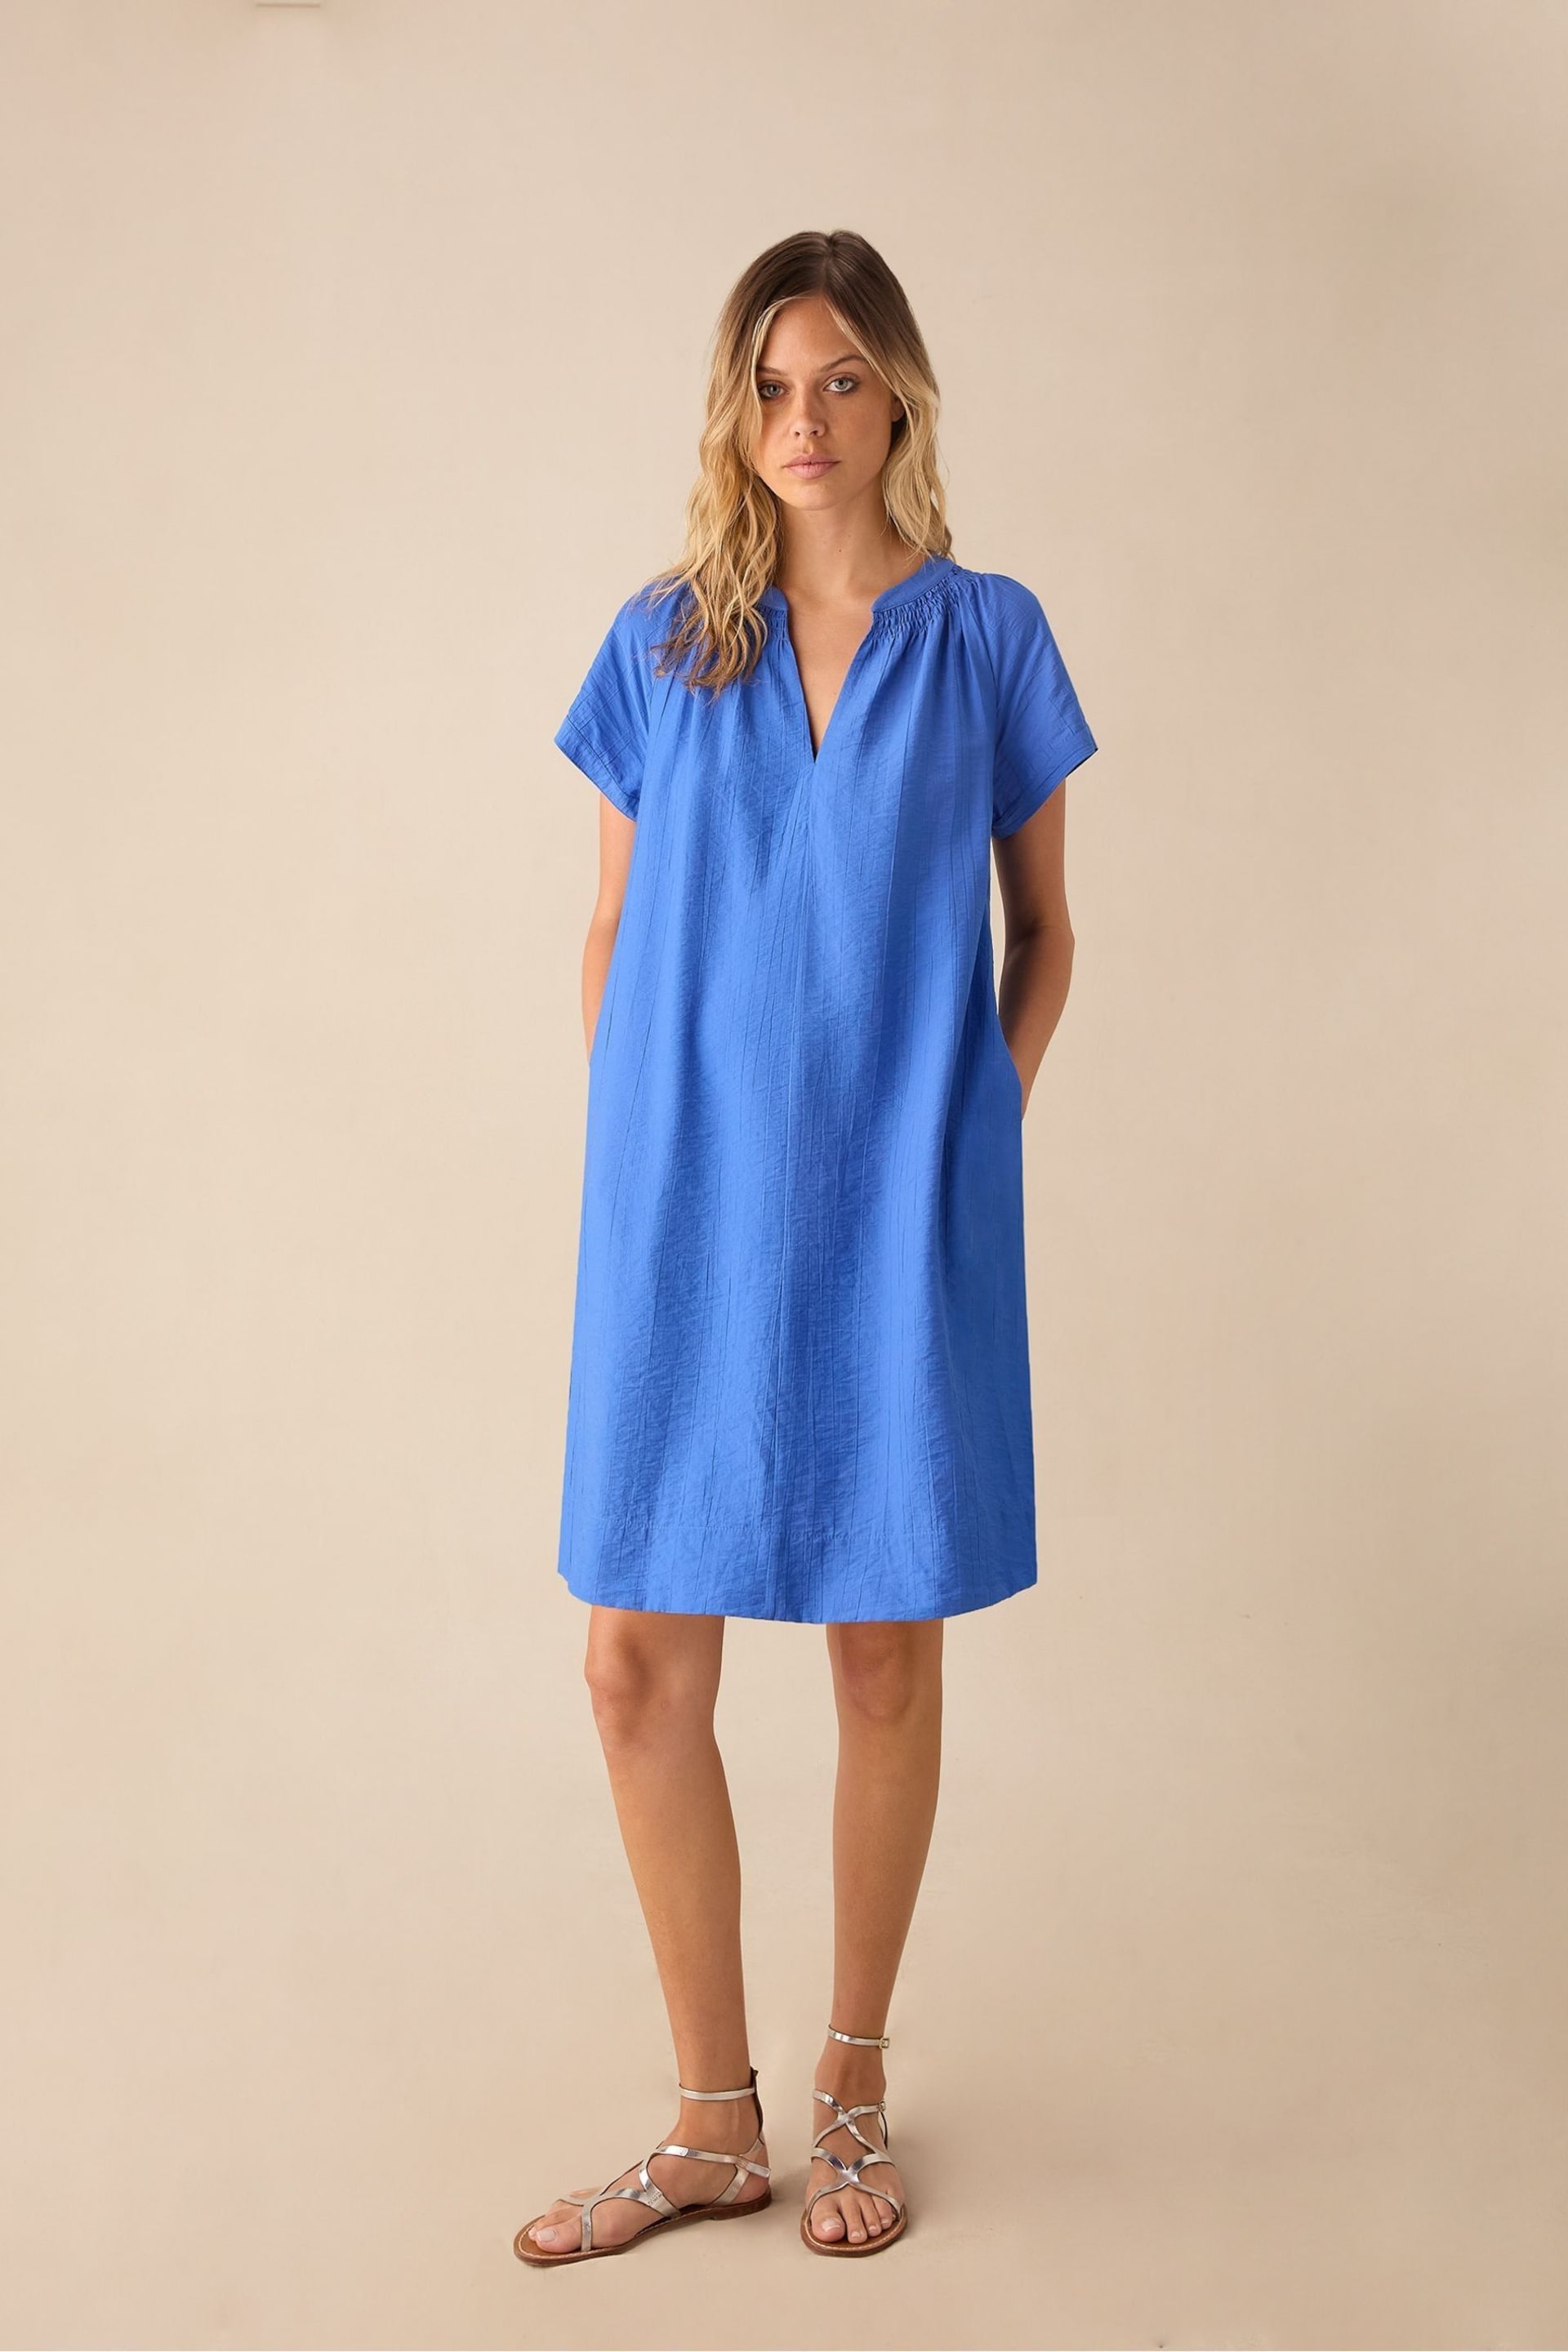 Ro&Zo Blue Gathered Neck Short Dress - Image 1 of 3